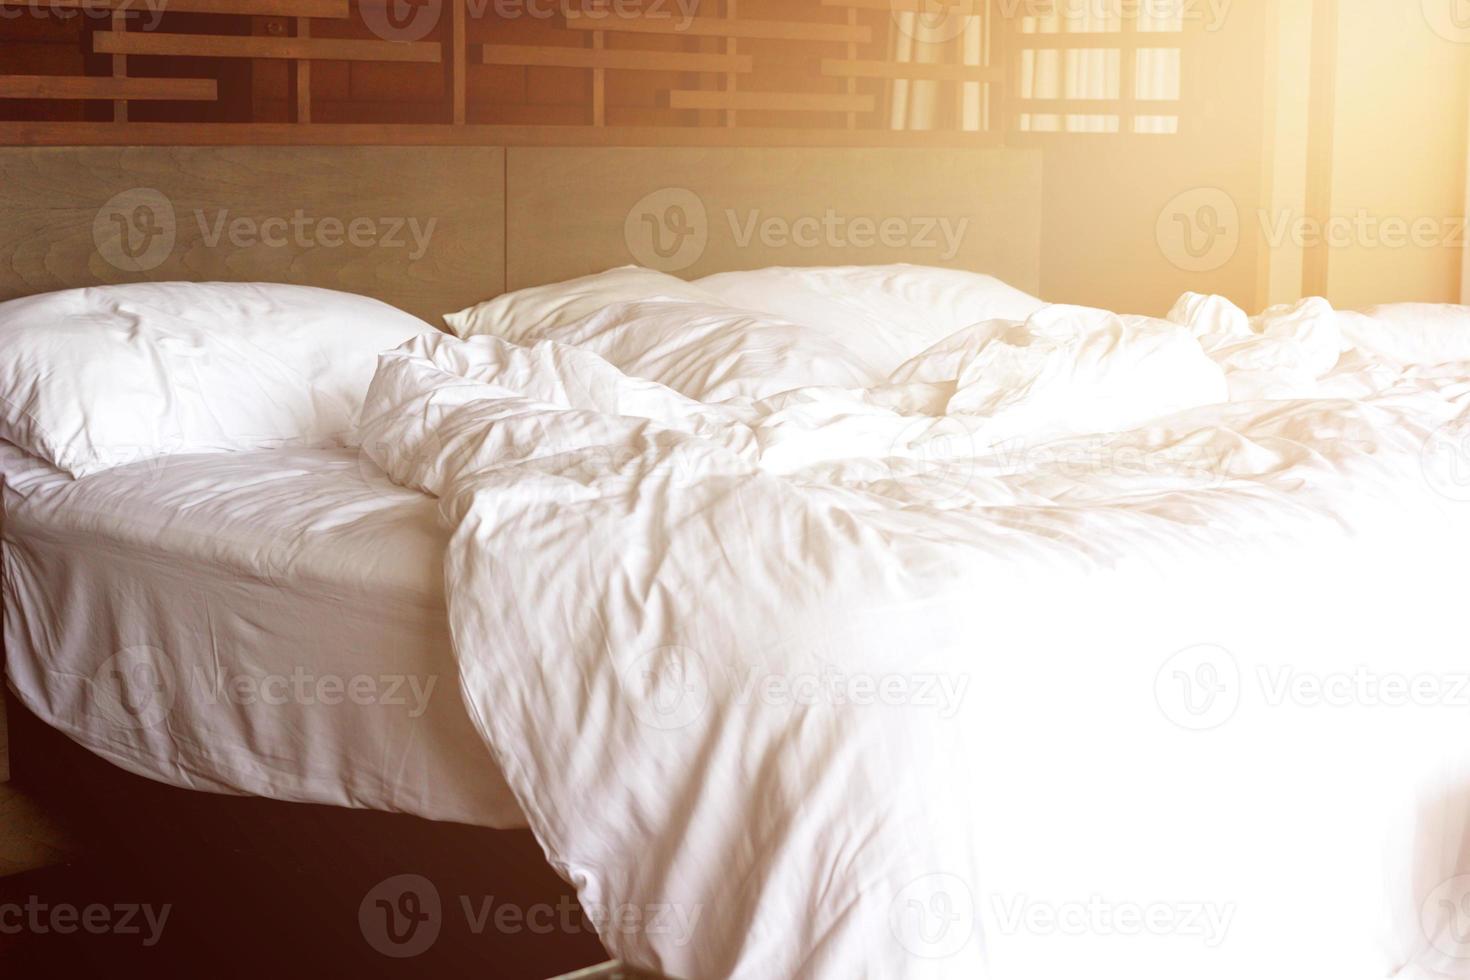 Bettlaken im Hotelchaos, nachdem die Kunden gegangen sind foto